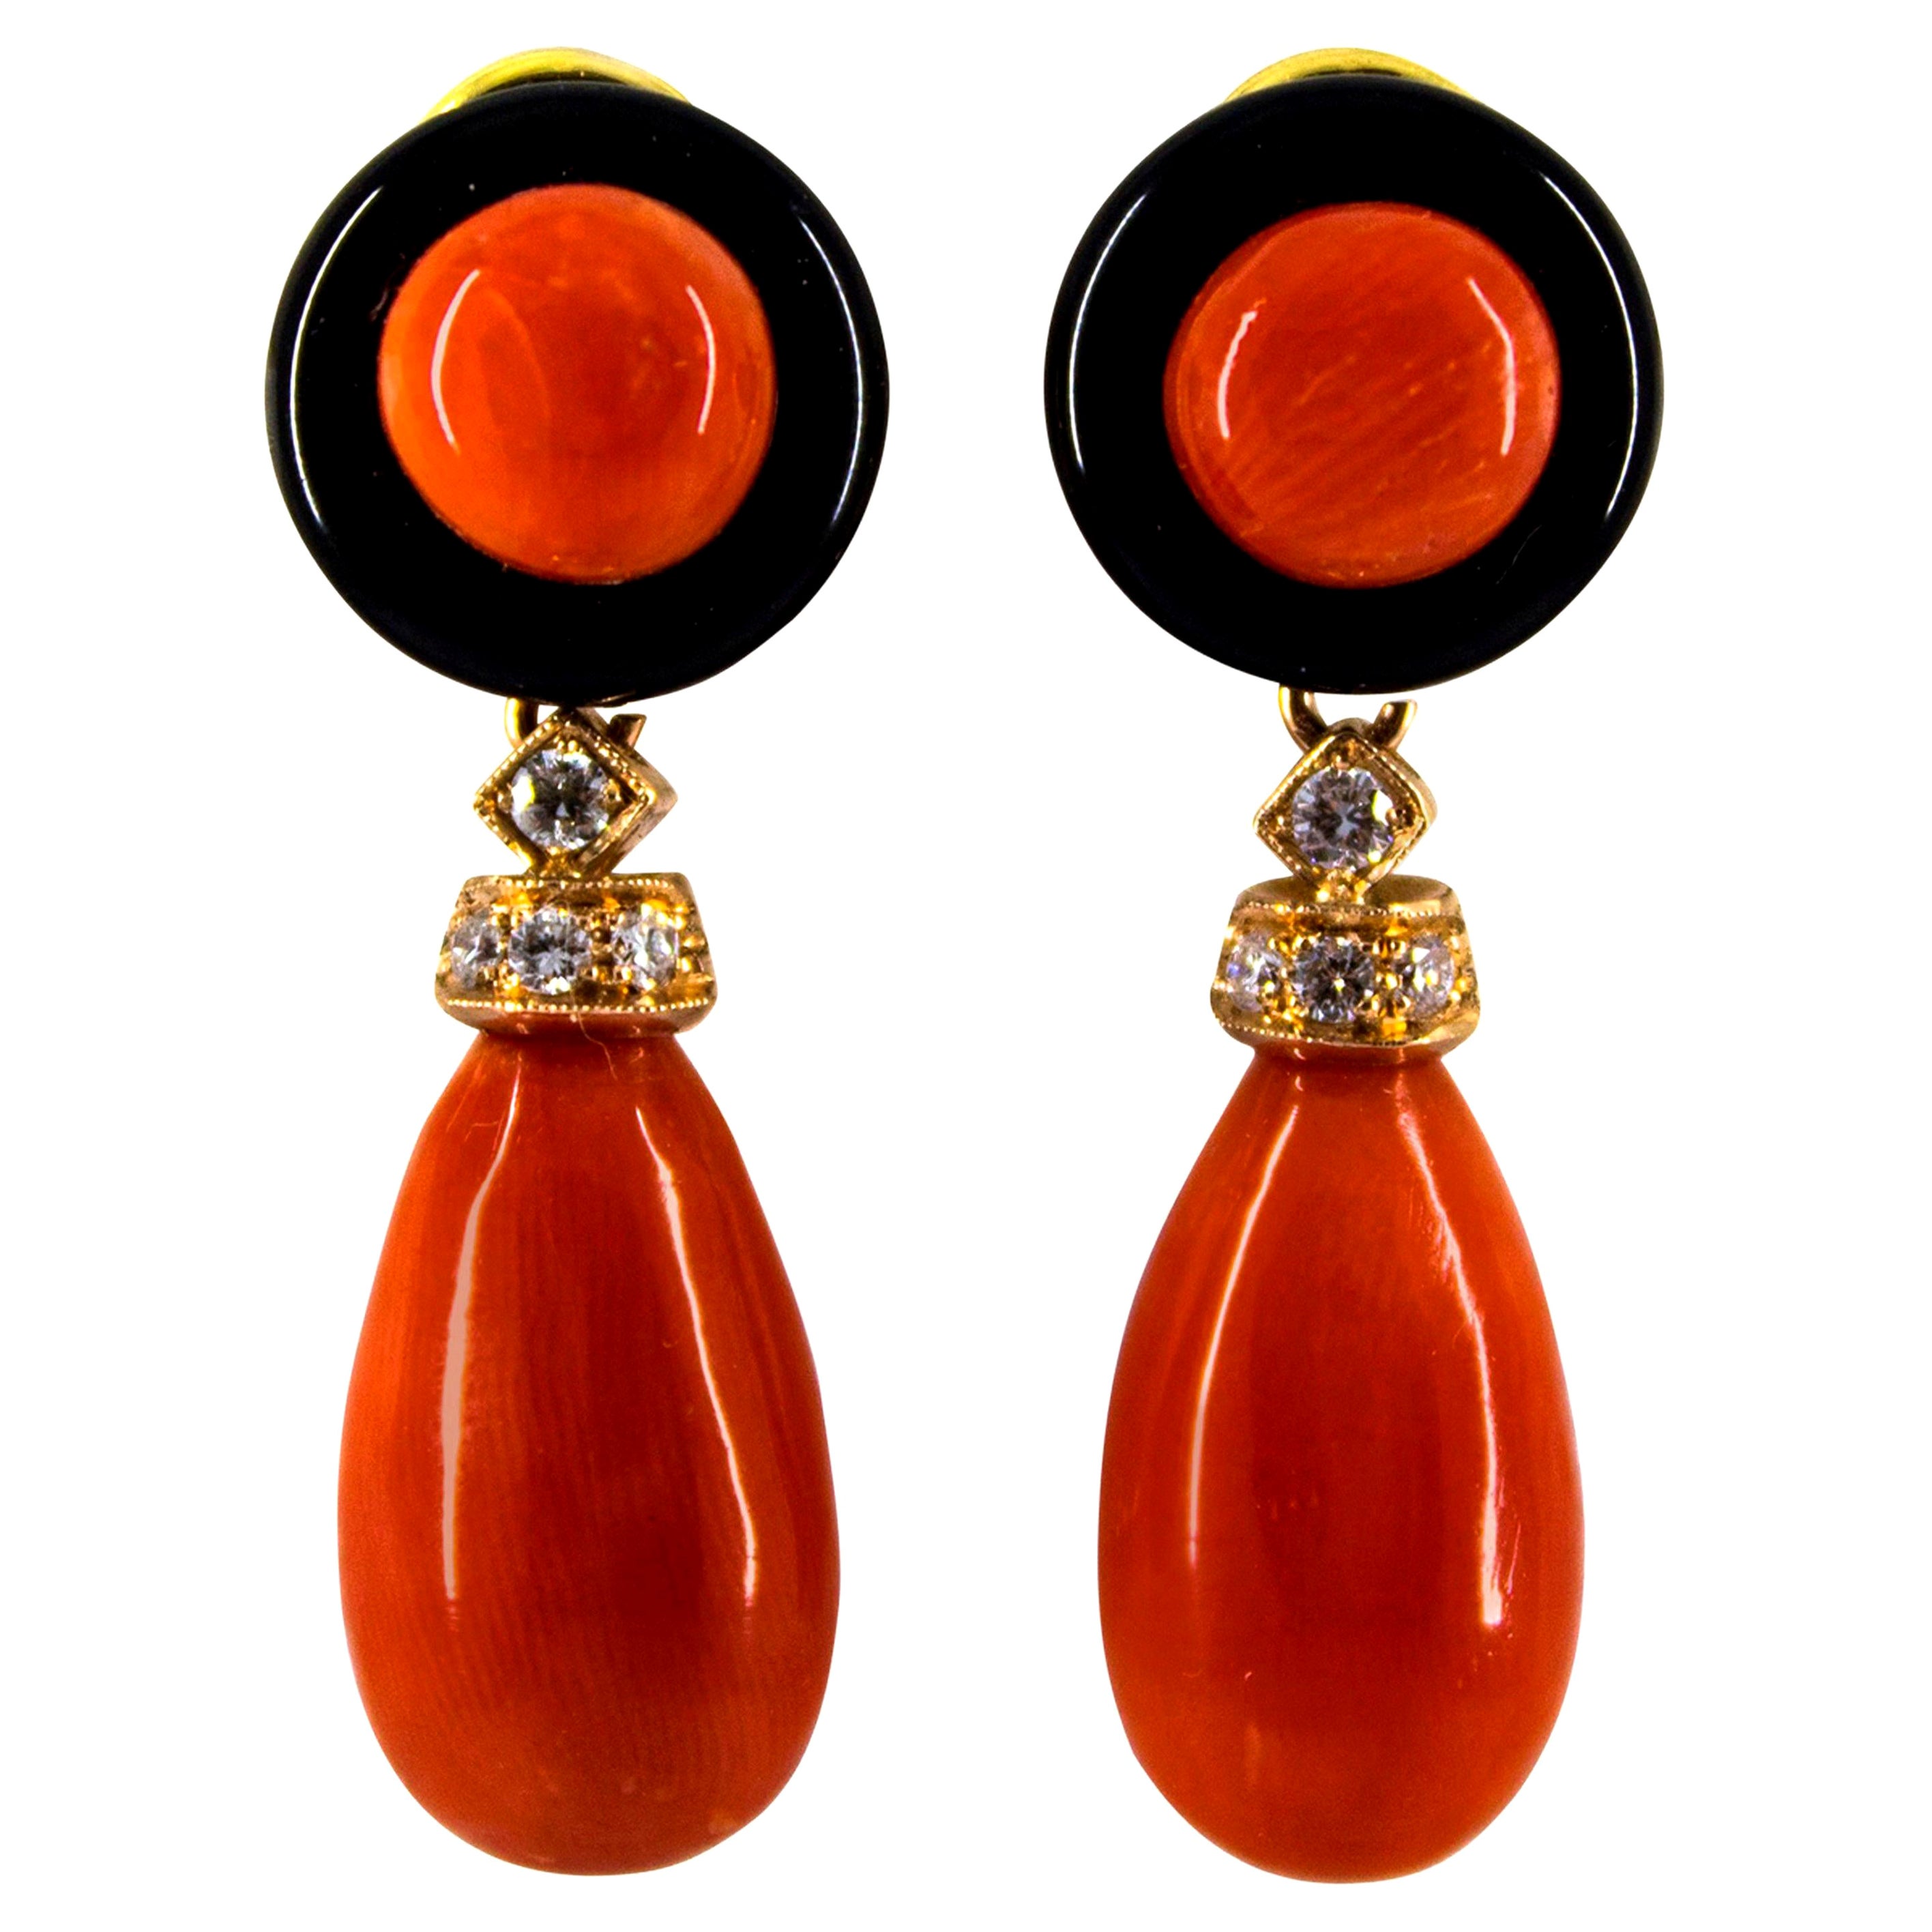 Boucles d'oreilles en or jaune de style Art déco avec corail rouge méditerranéen, diamants blancs et onyx